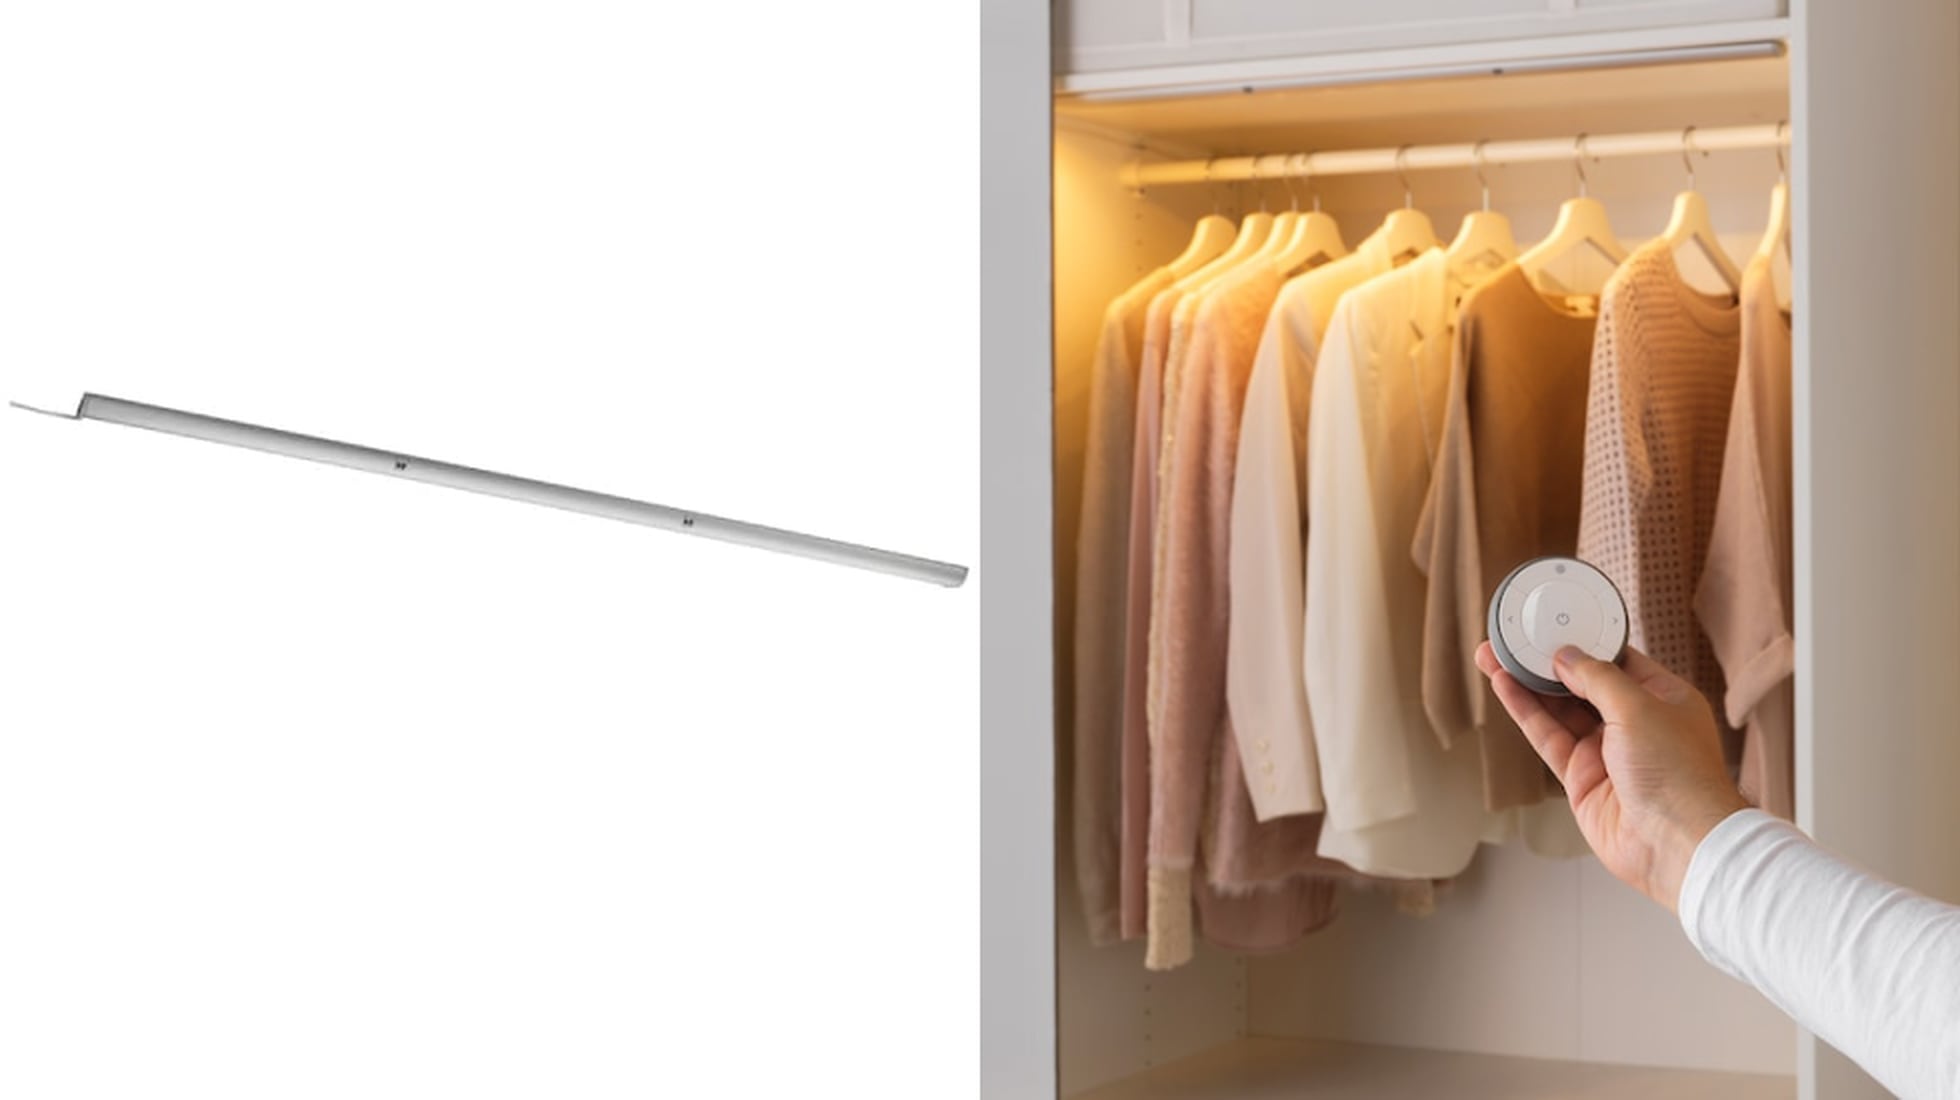 Seis soluciones de Ikea para iluminar de manera muy sencilla el interior de  armarios, librerías e incluso de los cajones